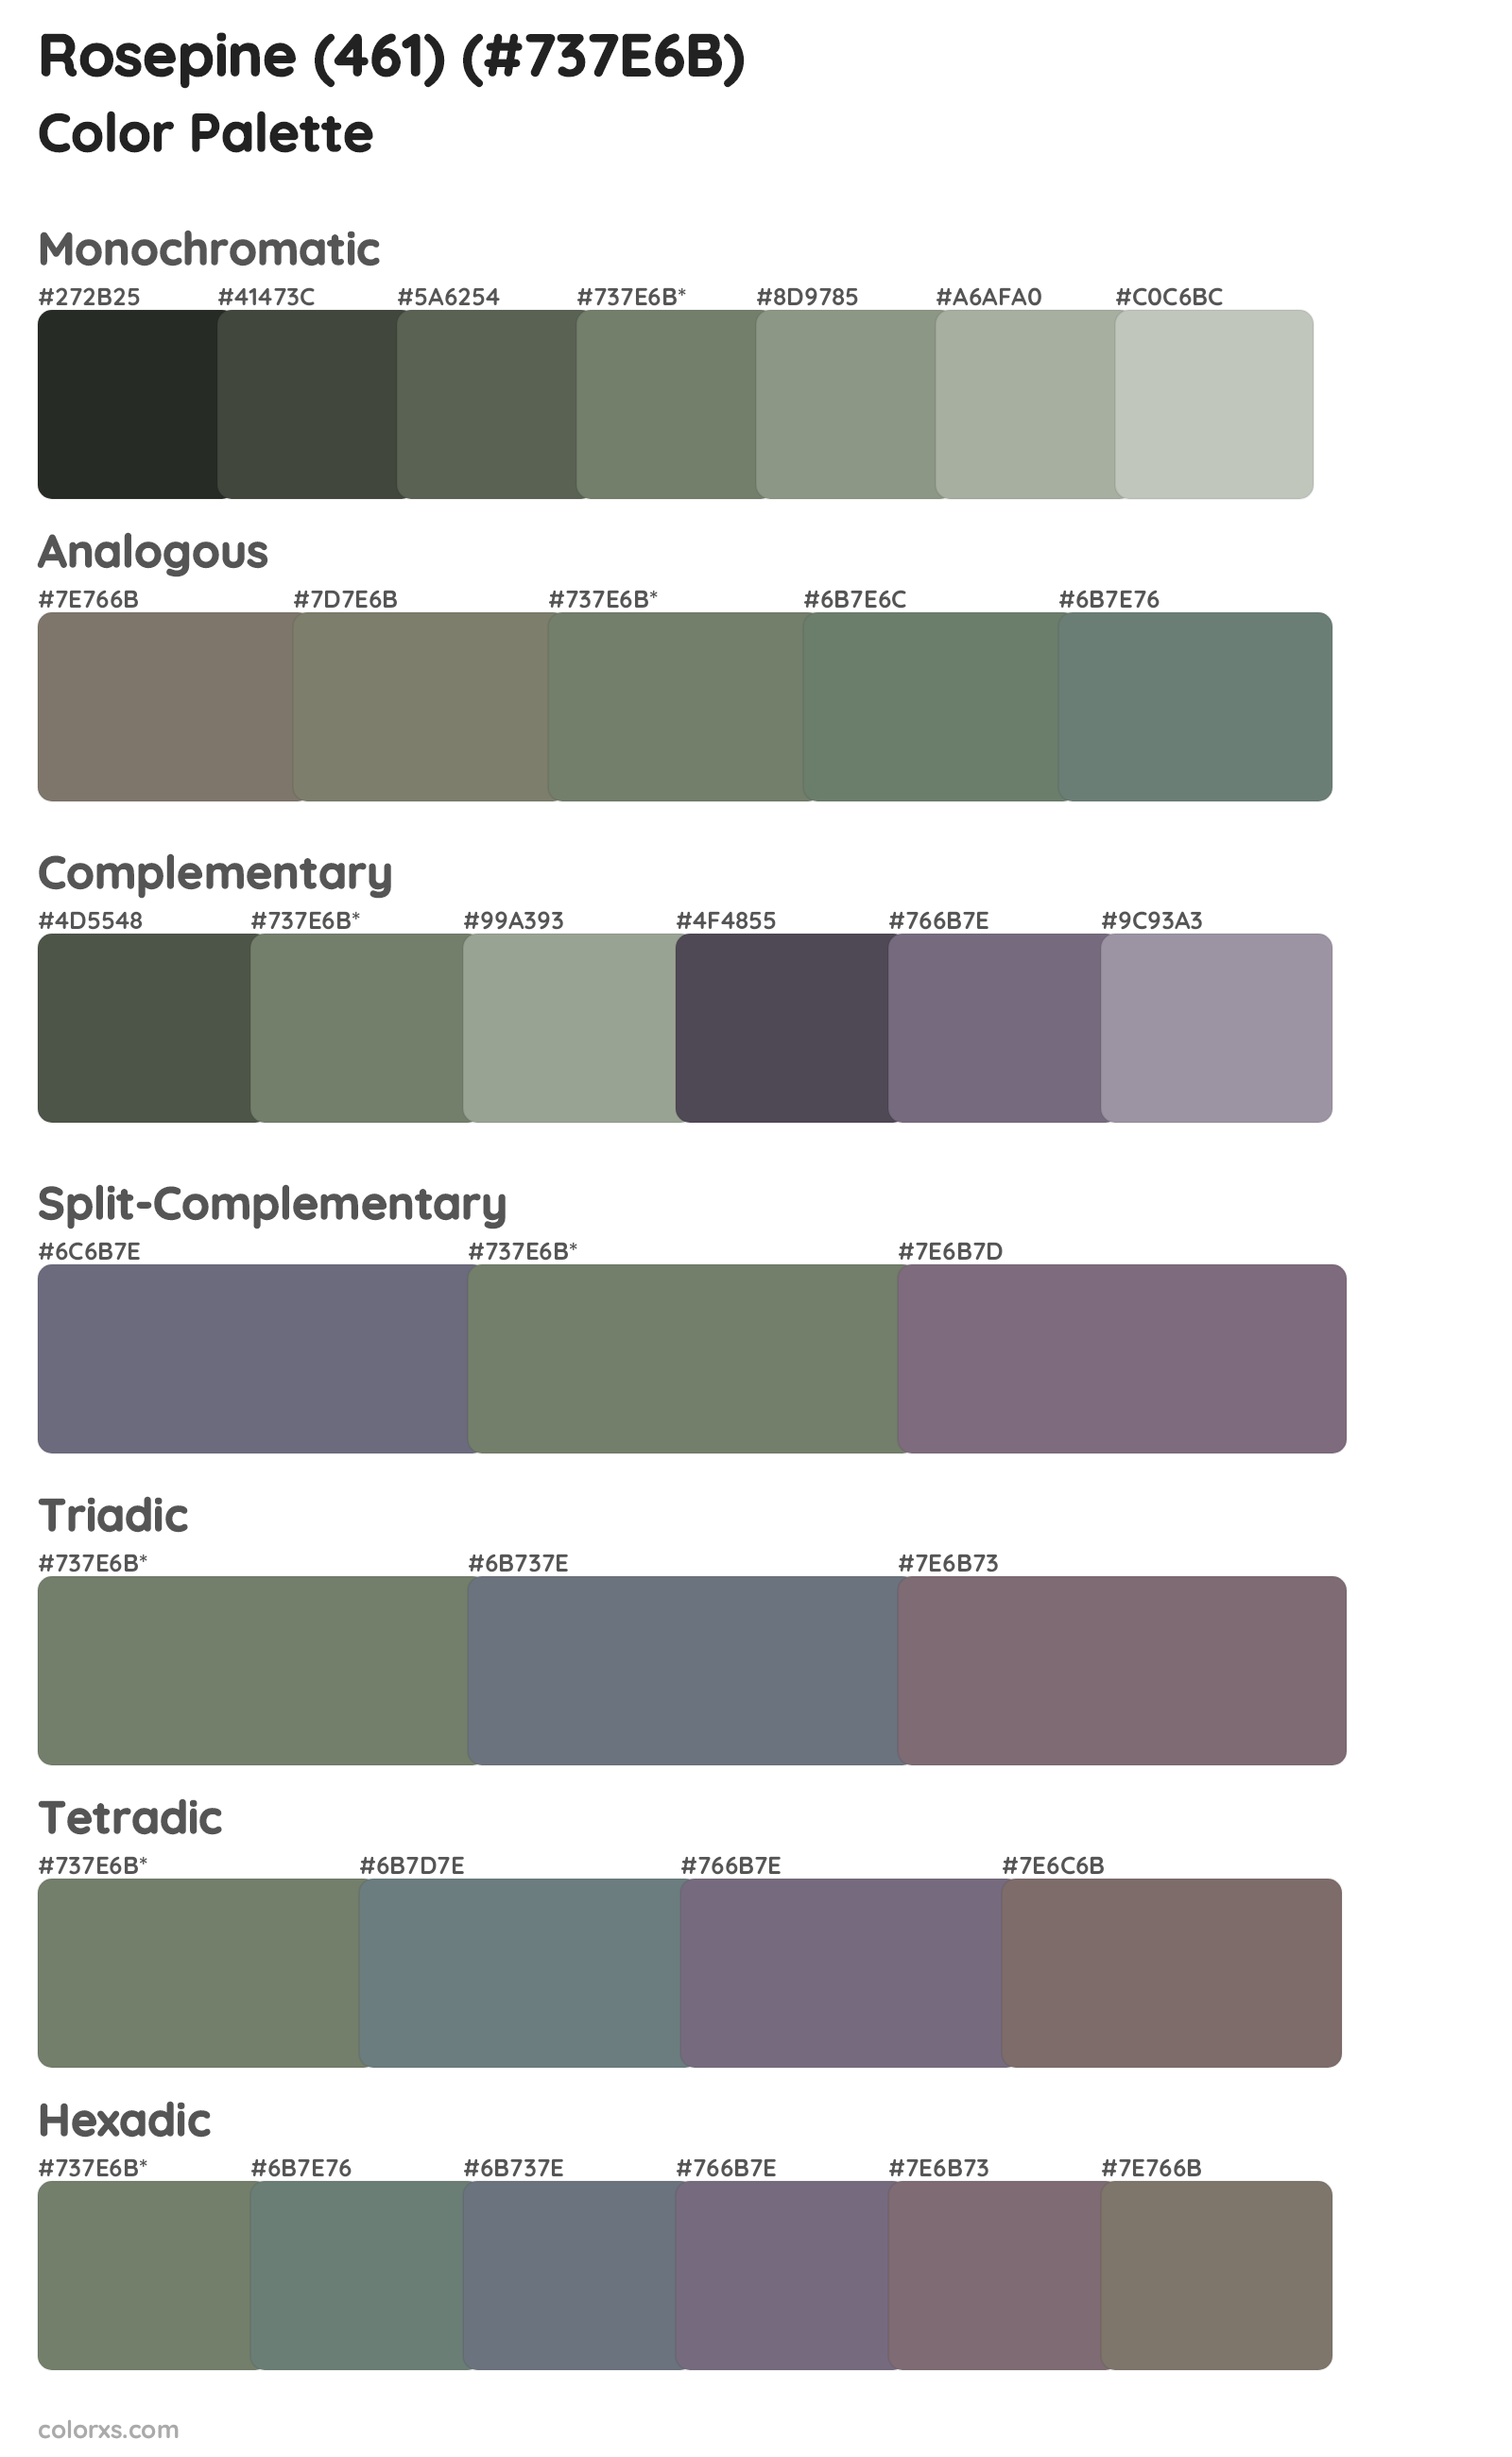 Rosepine (461) Color Scheme Palettes